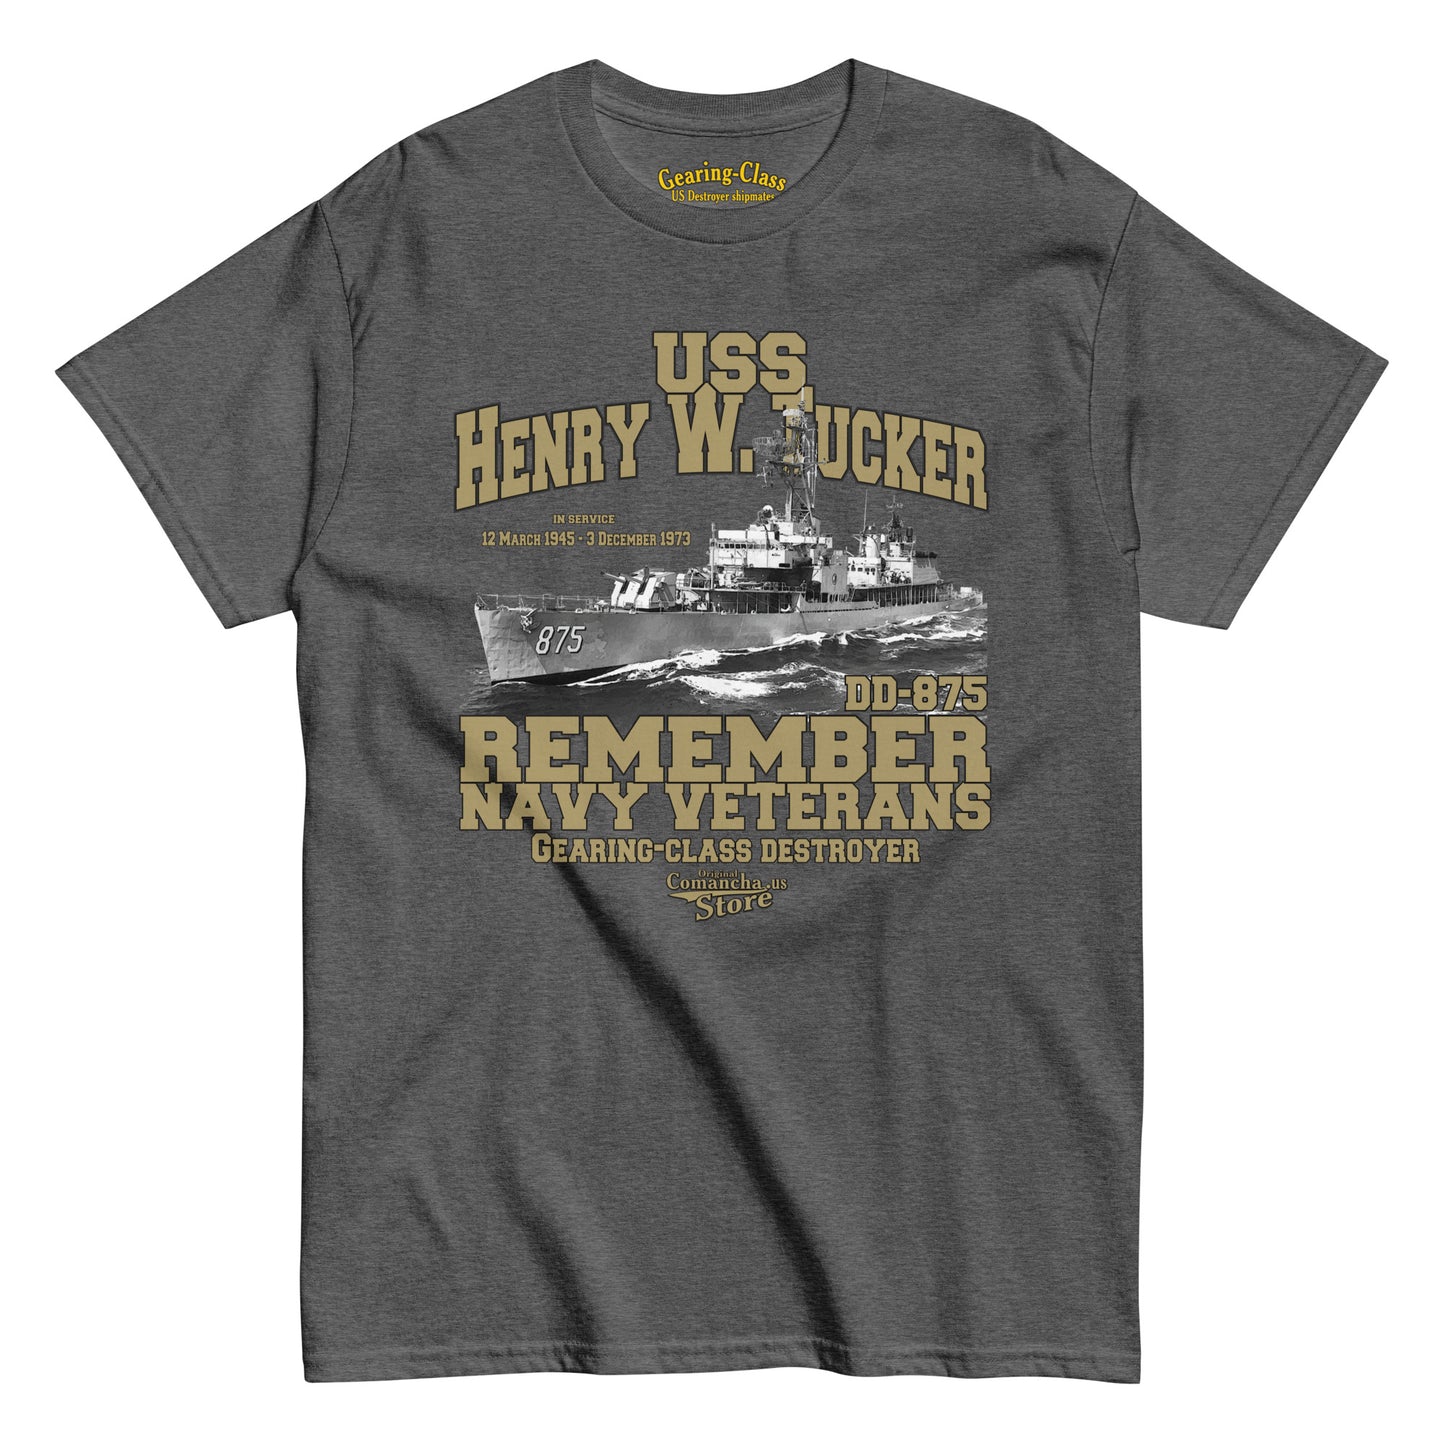 USS Henry W. Tucker DD-875 t-shirt,